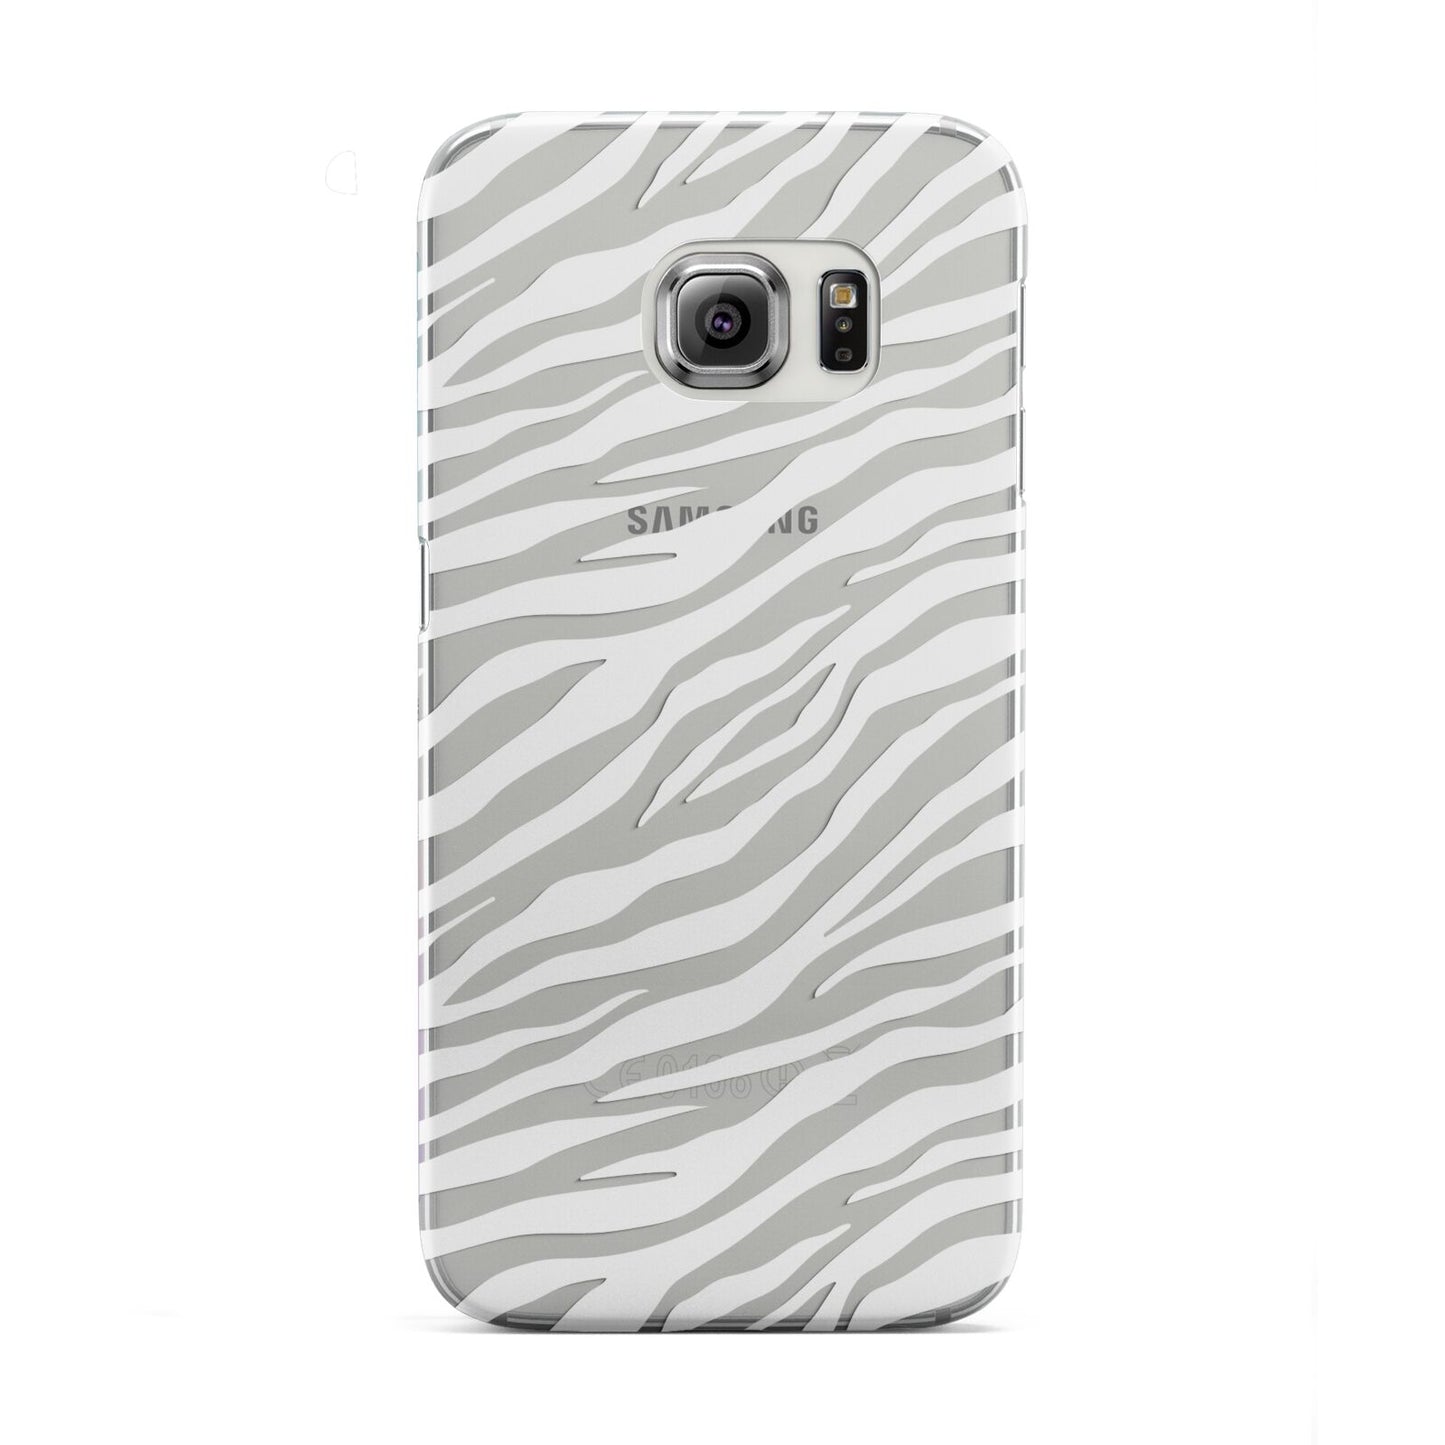 White Zebra Print Samsung Galaxy S6 Edge Case